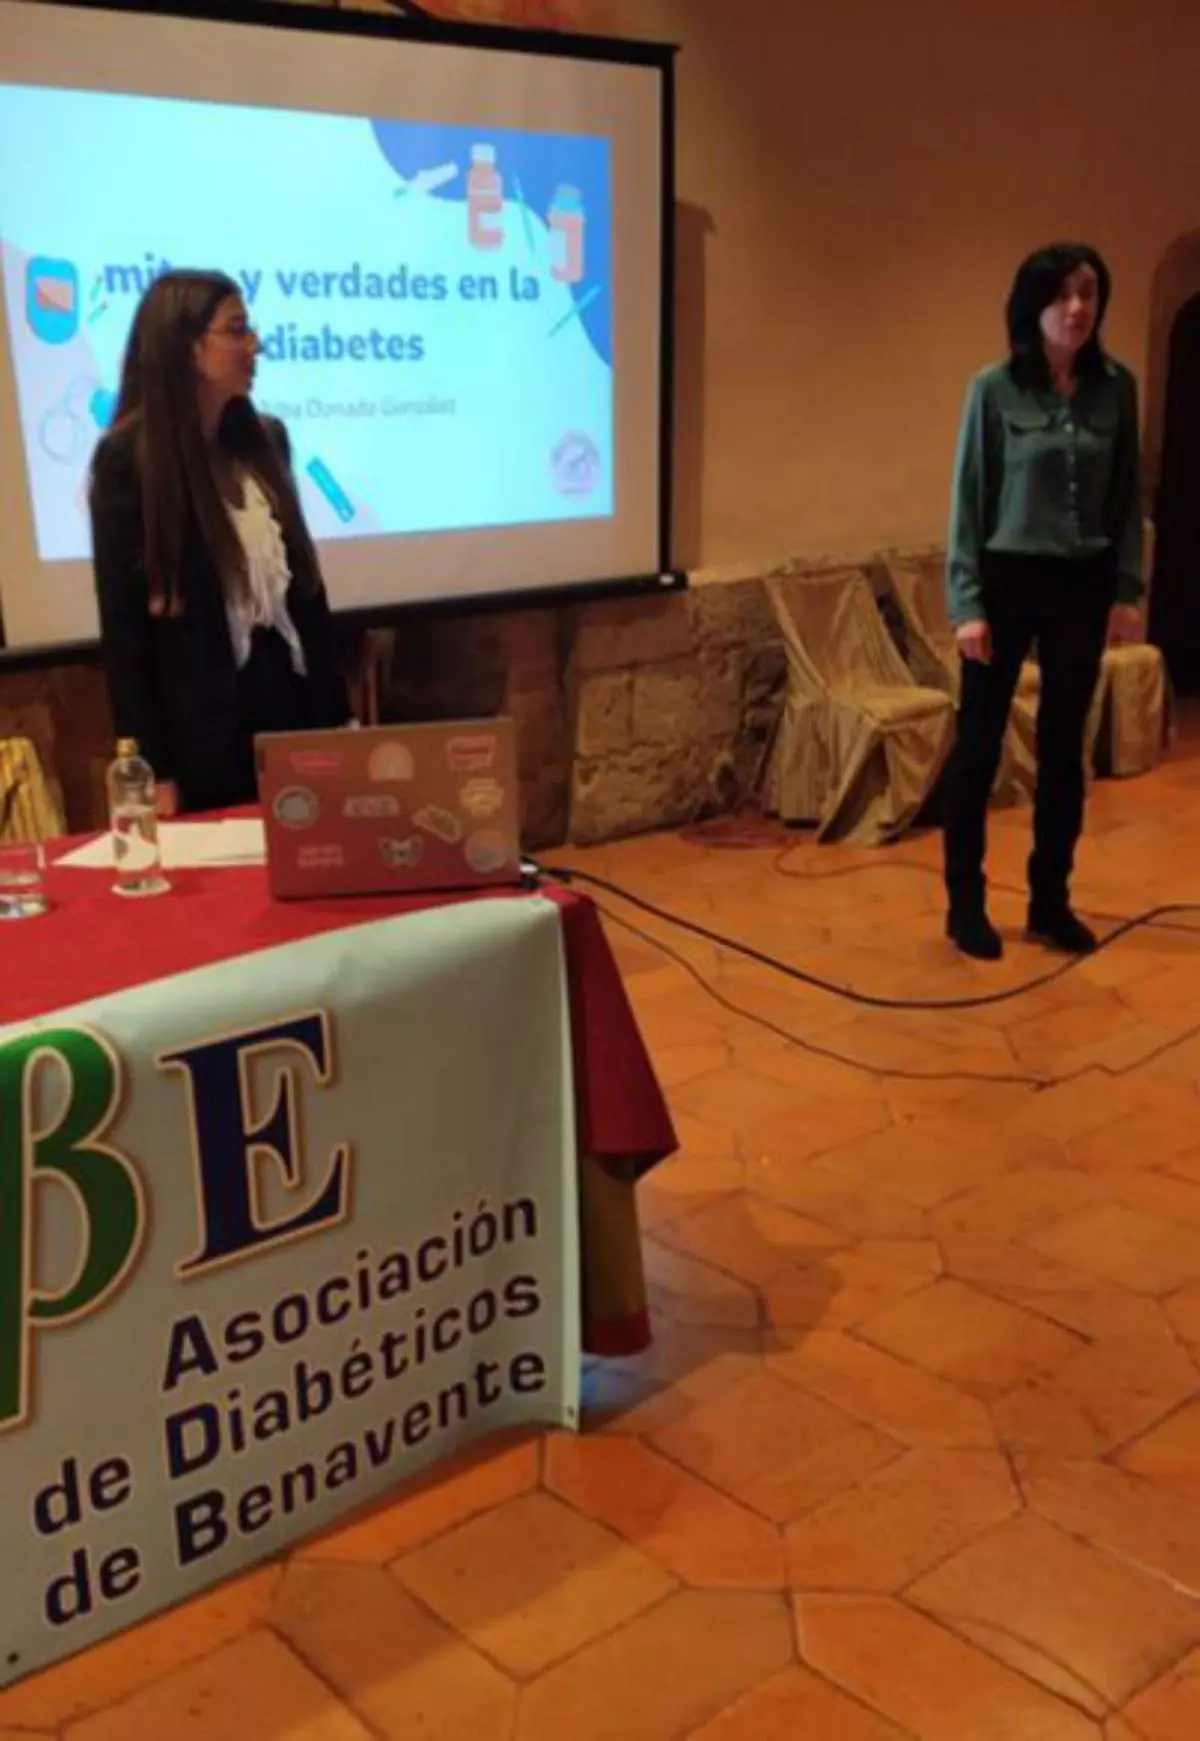 La Asociación de Diabetes realiza un taller práctico sobre las etiquetas de los alimentos